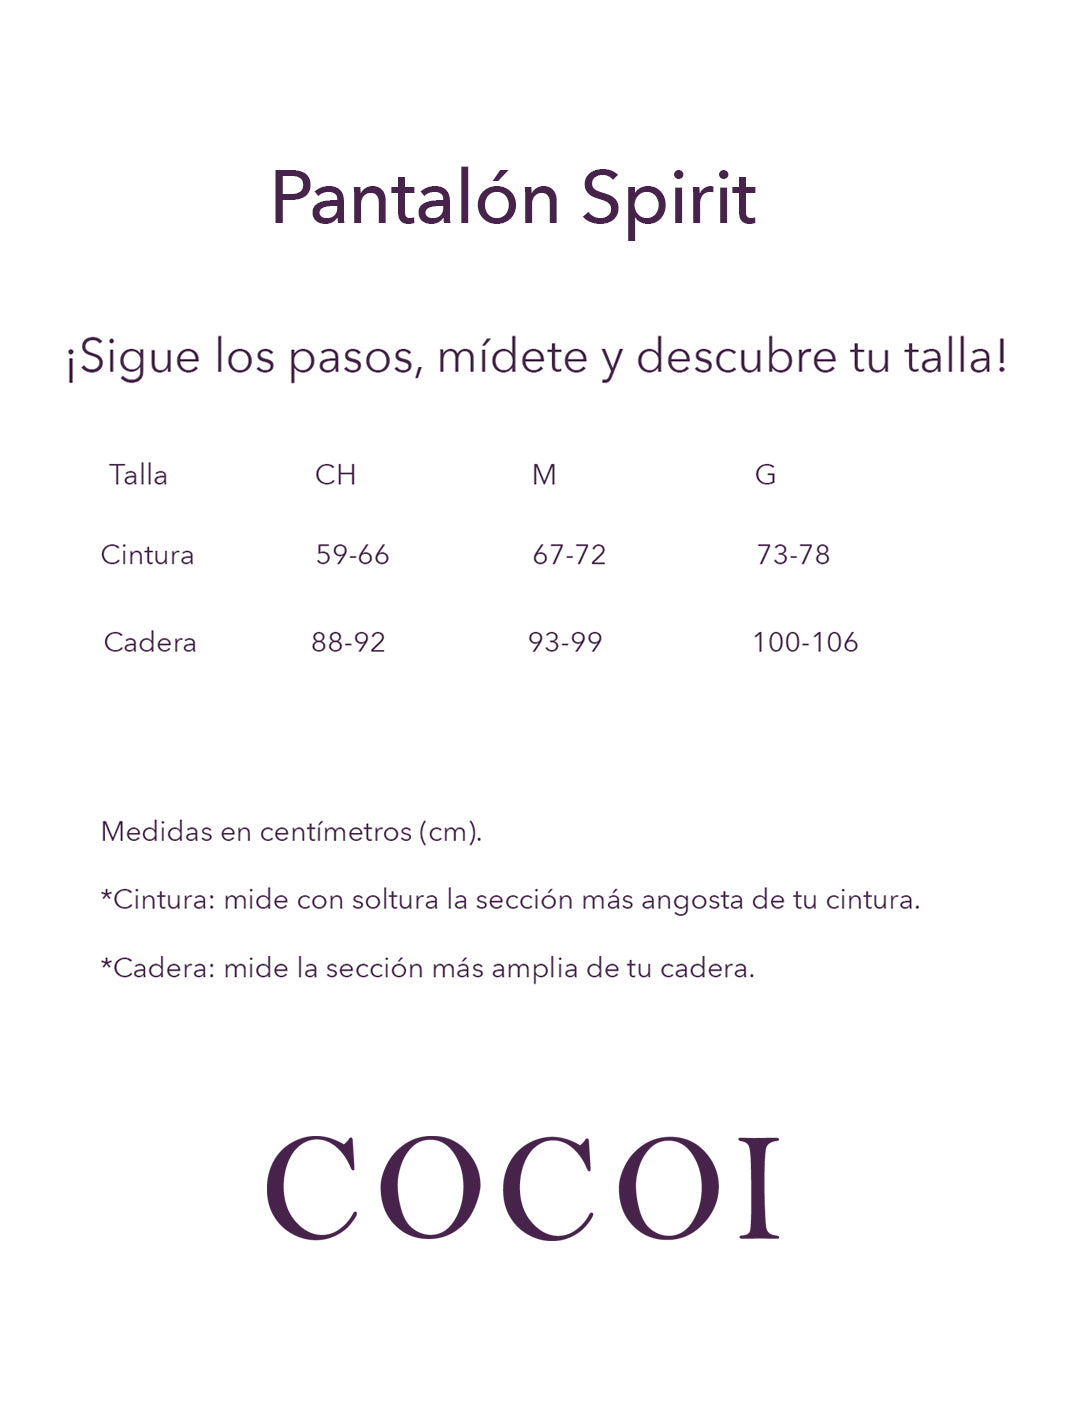 Pantalón Spirit Gris Cocoi